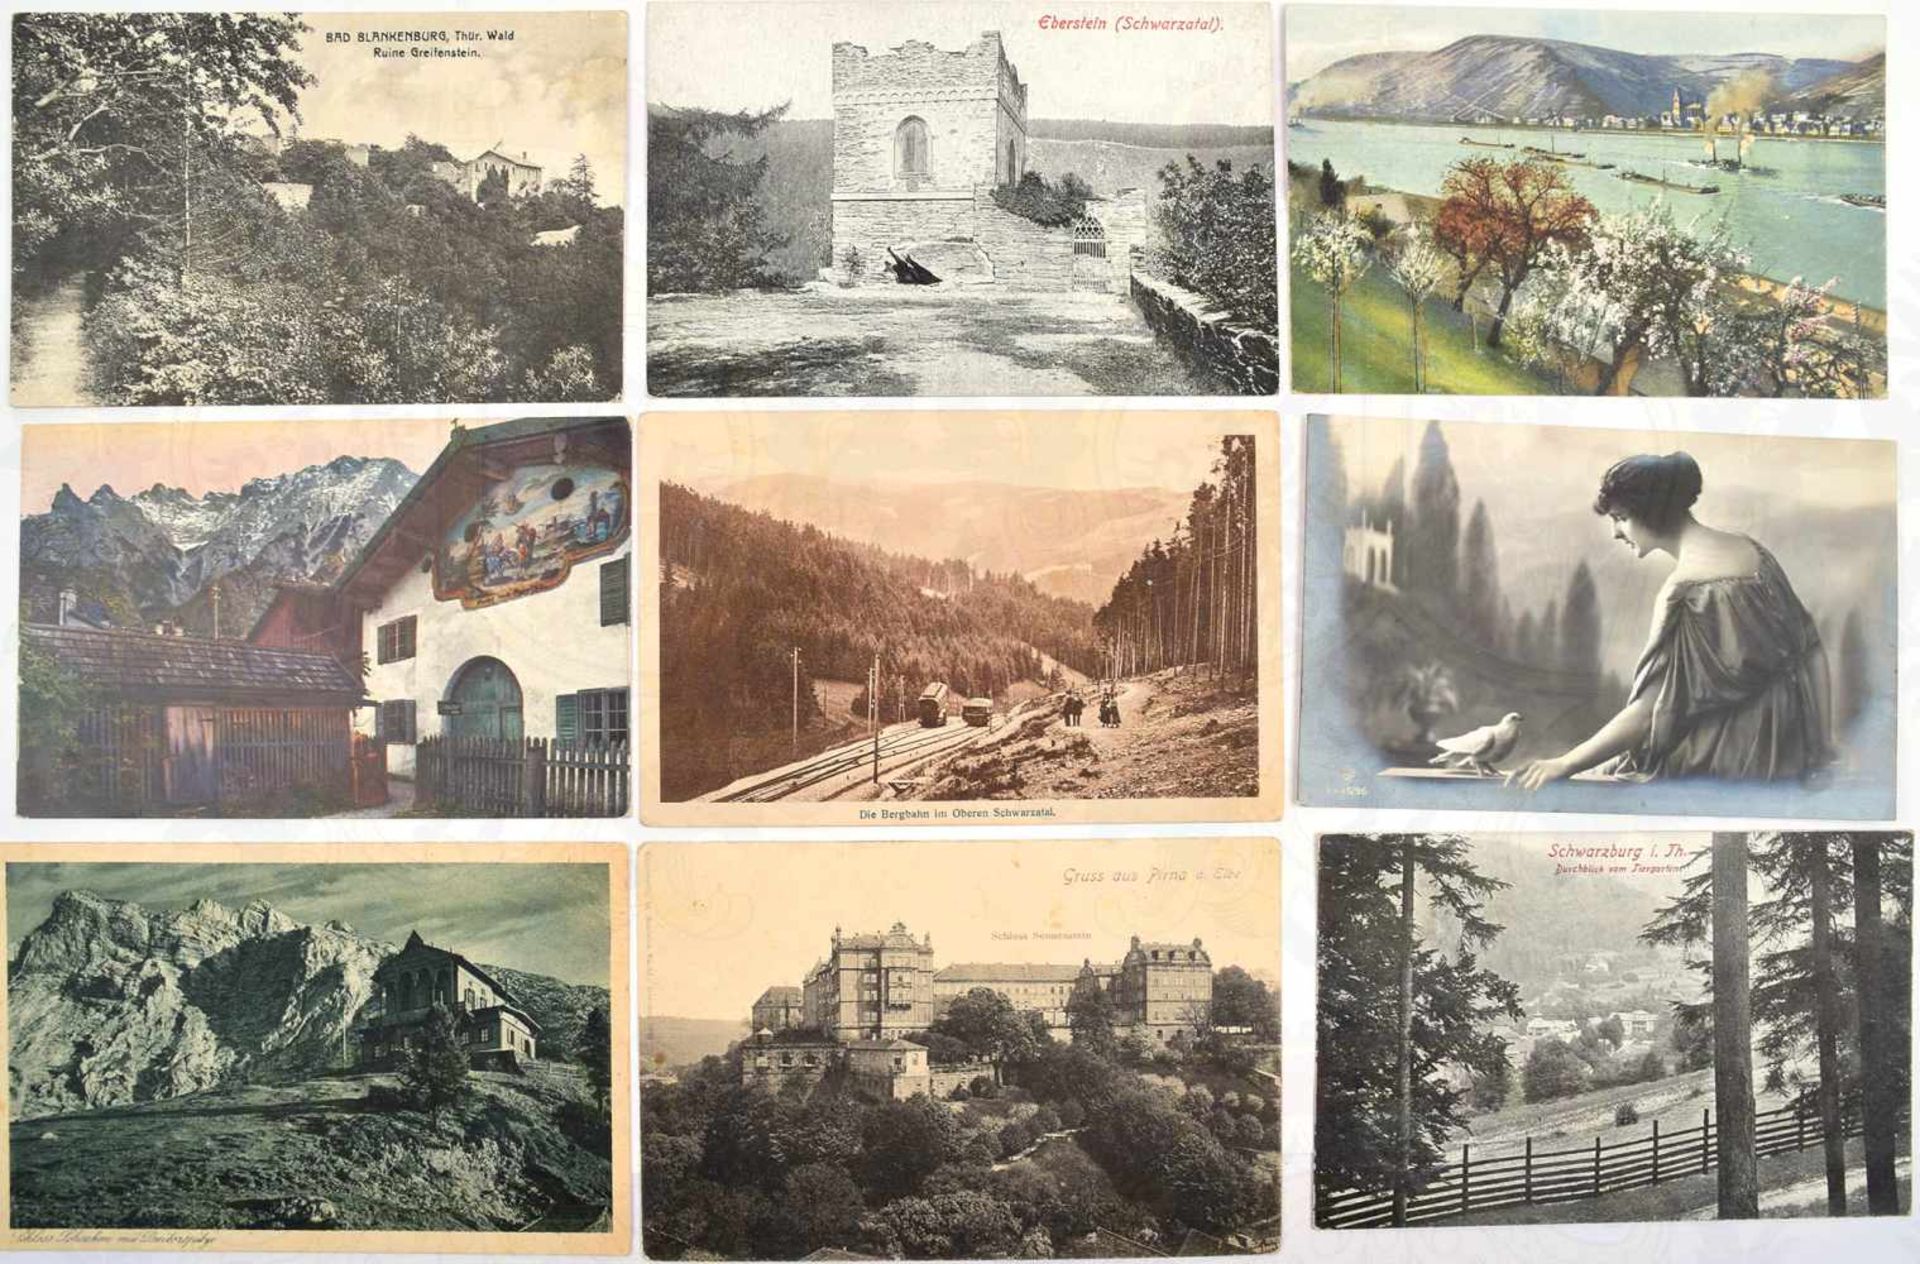 85 AK, Landschaften, Liebespaare, Frauen, Grußkarten, farbige u. s/w, Foto-, Licht- u. Kunstdruck